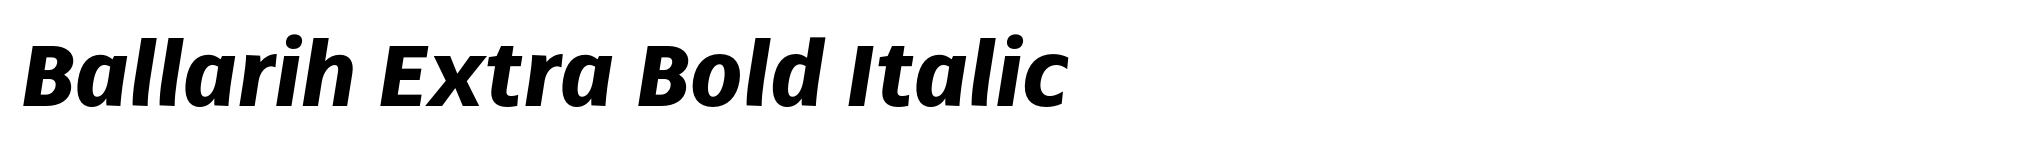 Ballarih Extra Bold Italic image